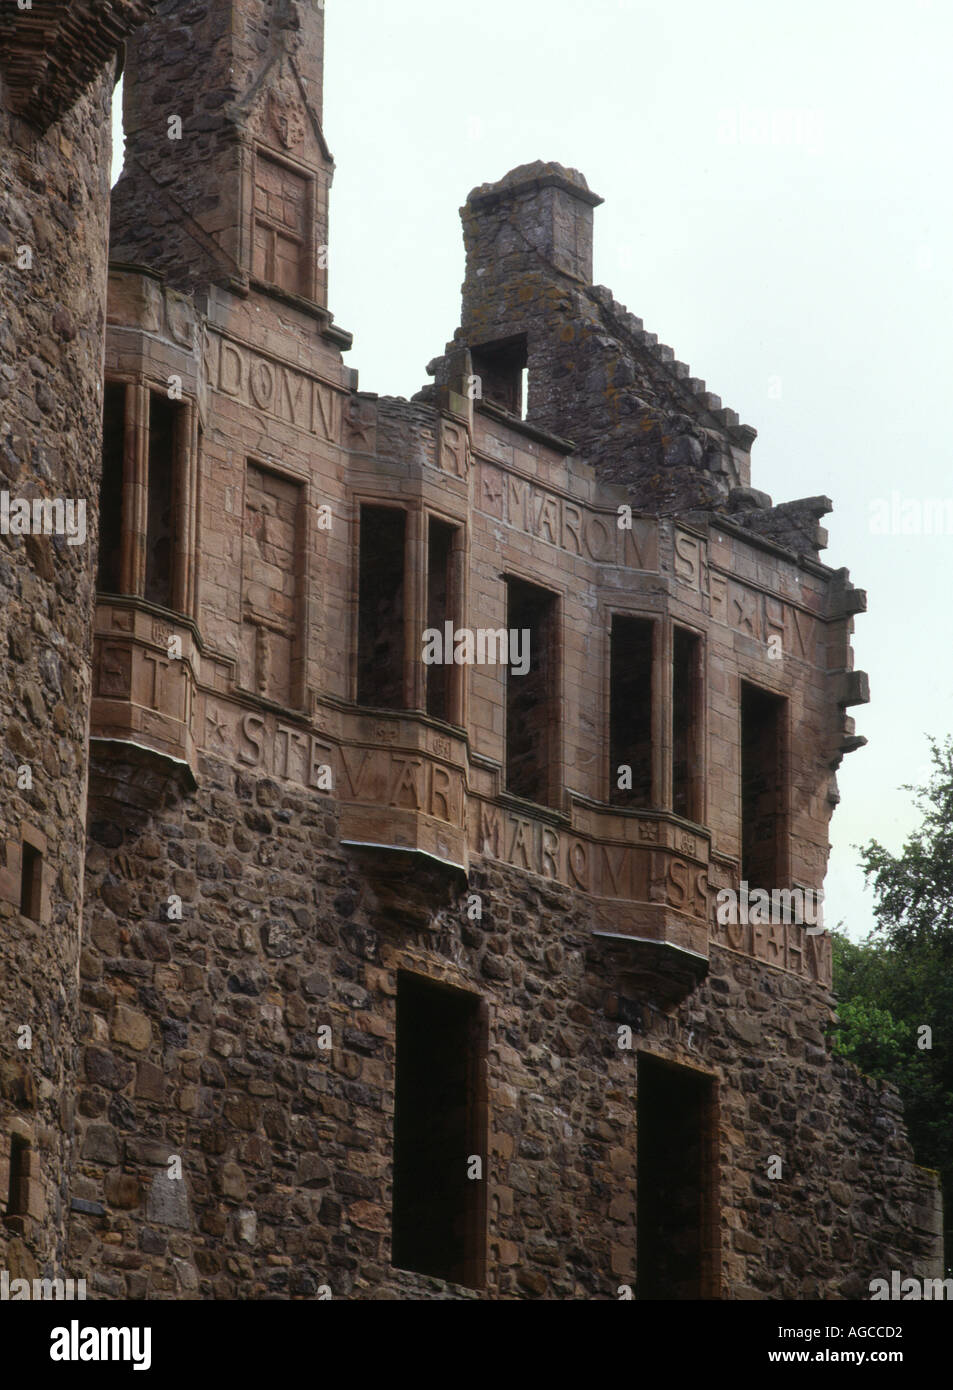 le dh HUNTLY CASTLE ABERDEENSHIRE a ruiné les châteaux avec des lettres sculptées en pierre sur les murs de l'écosse Banque D'Images